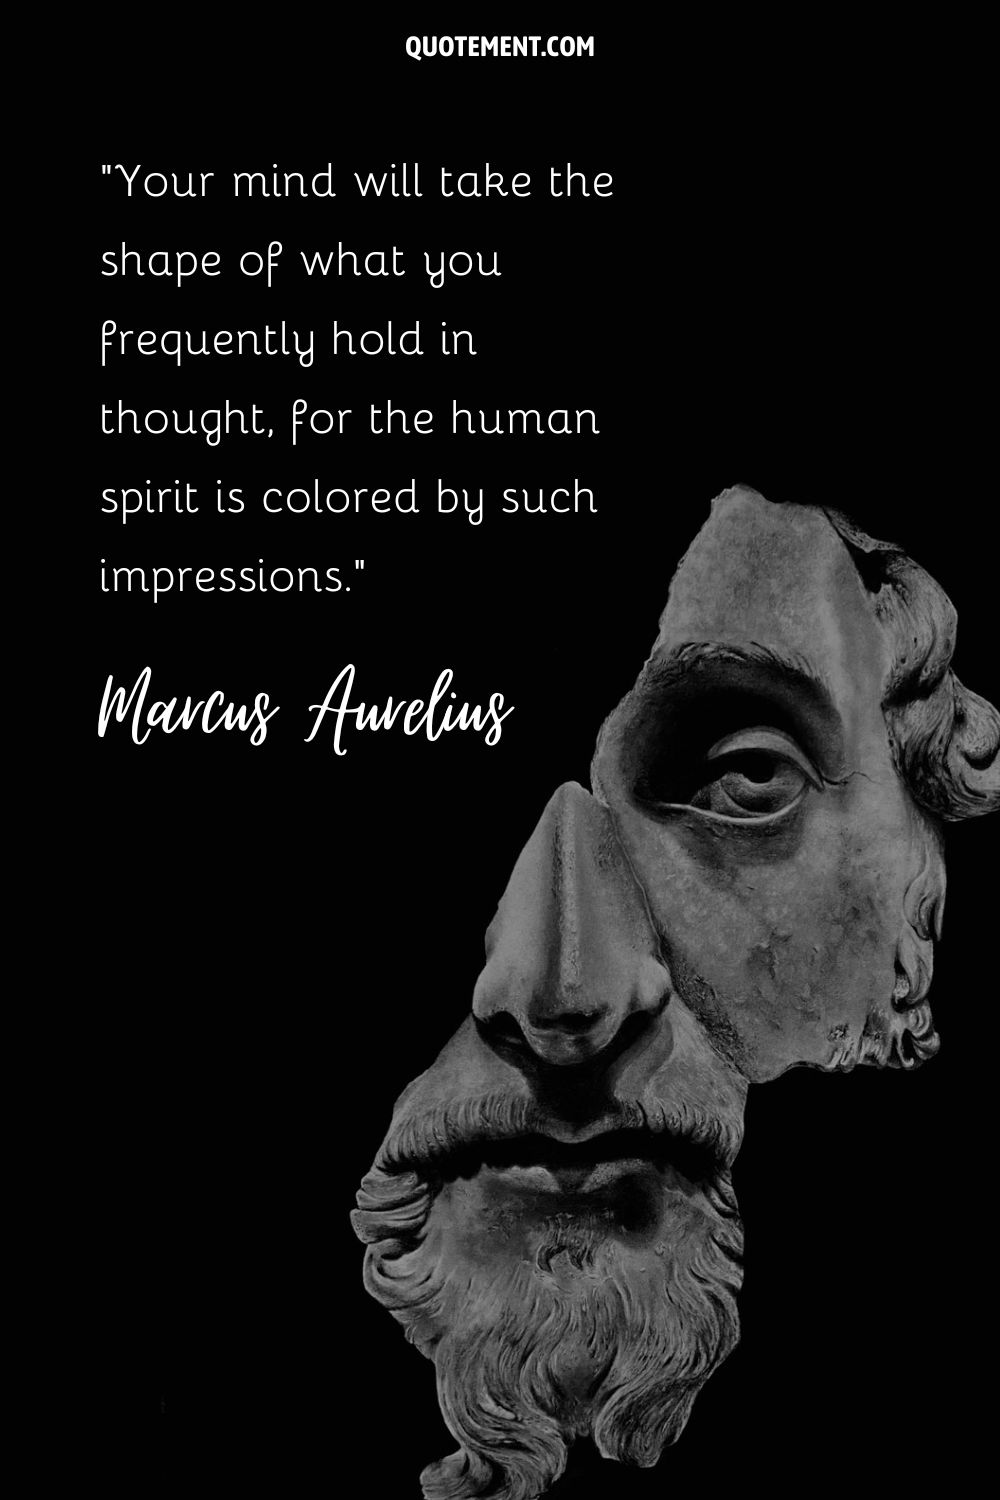 El majestuoso Marco Aurelio retratado en una perdurable escultura de piedra.